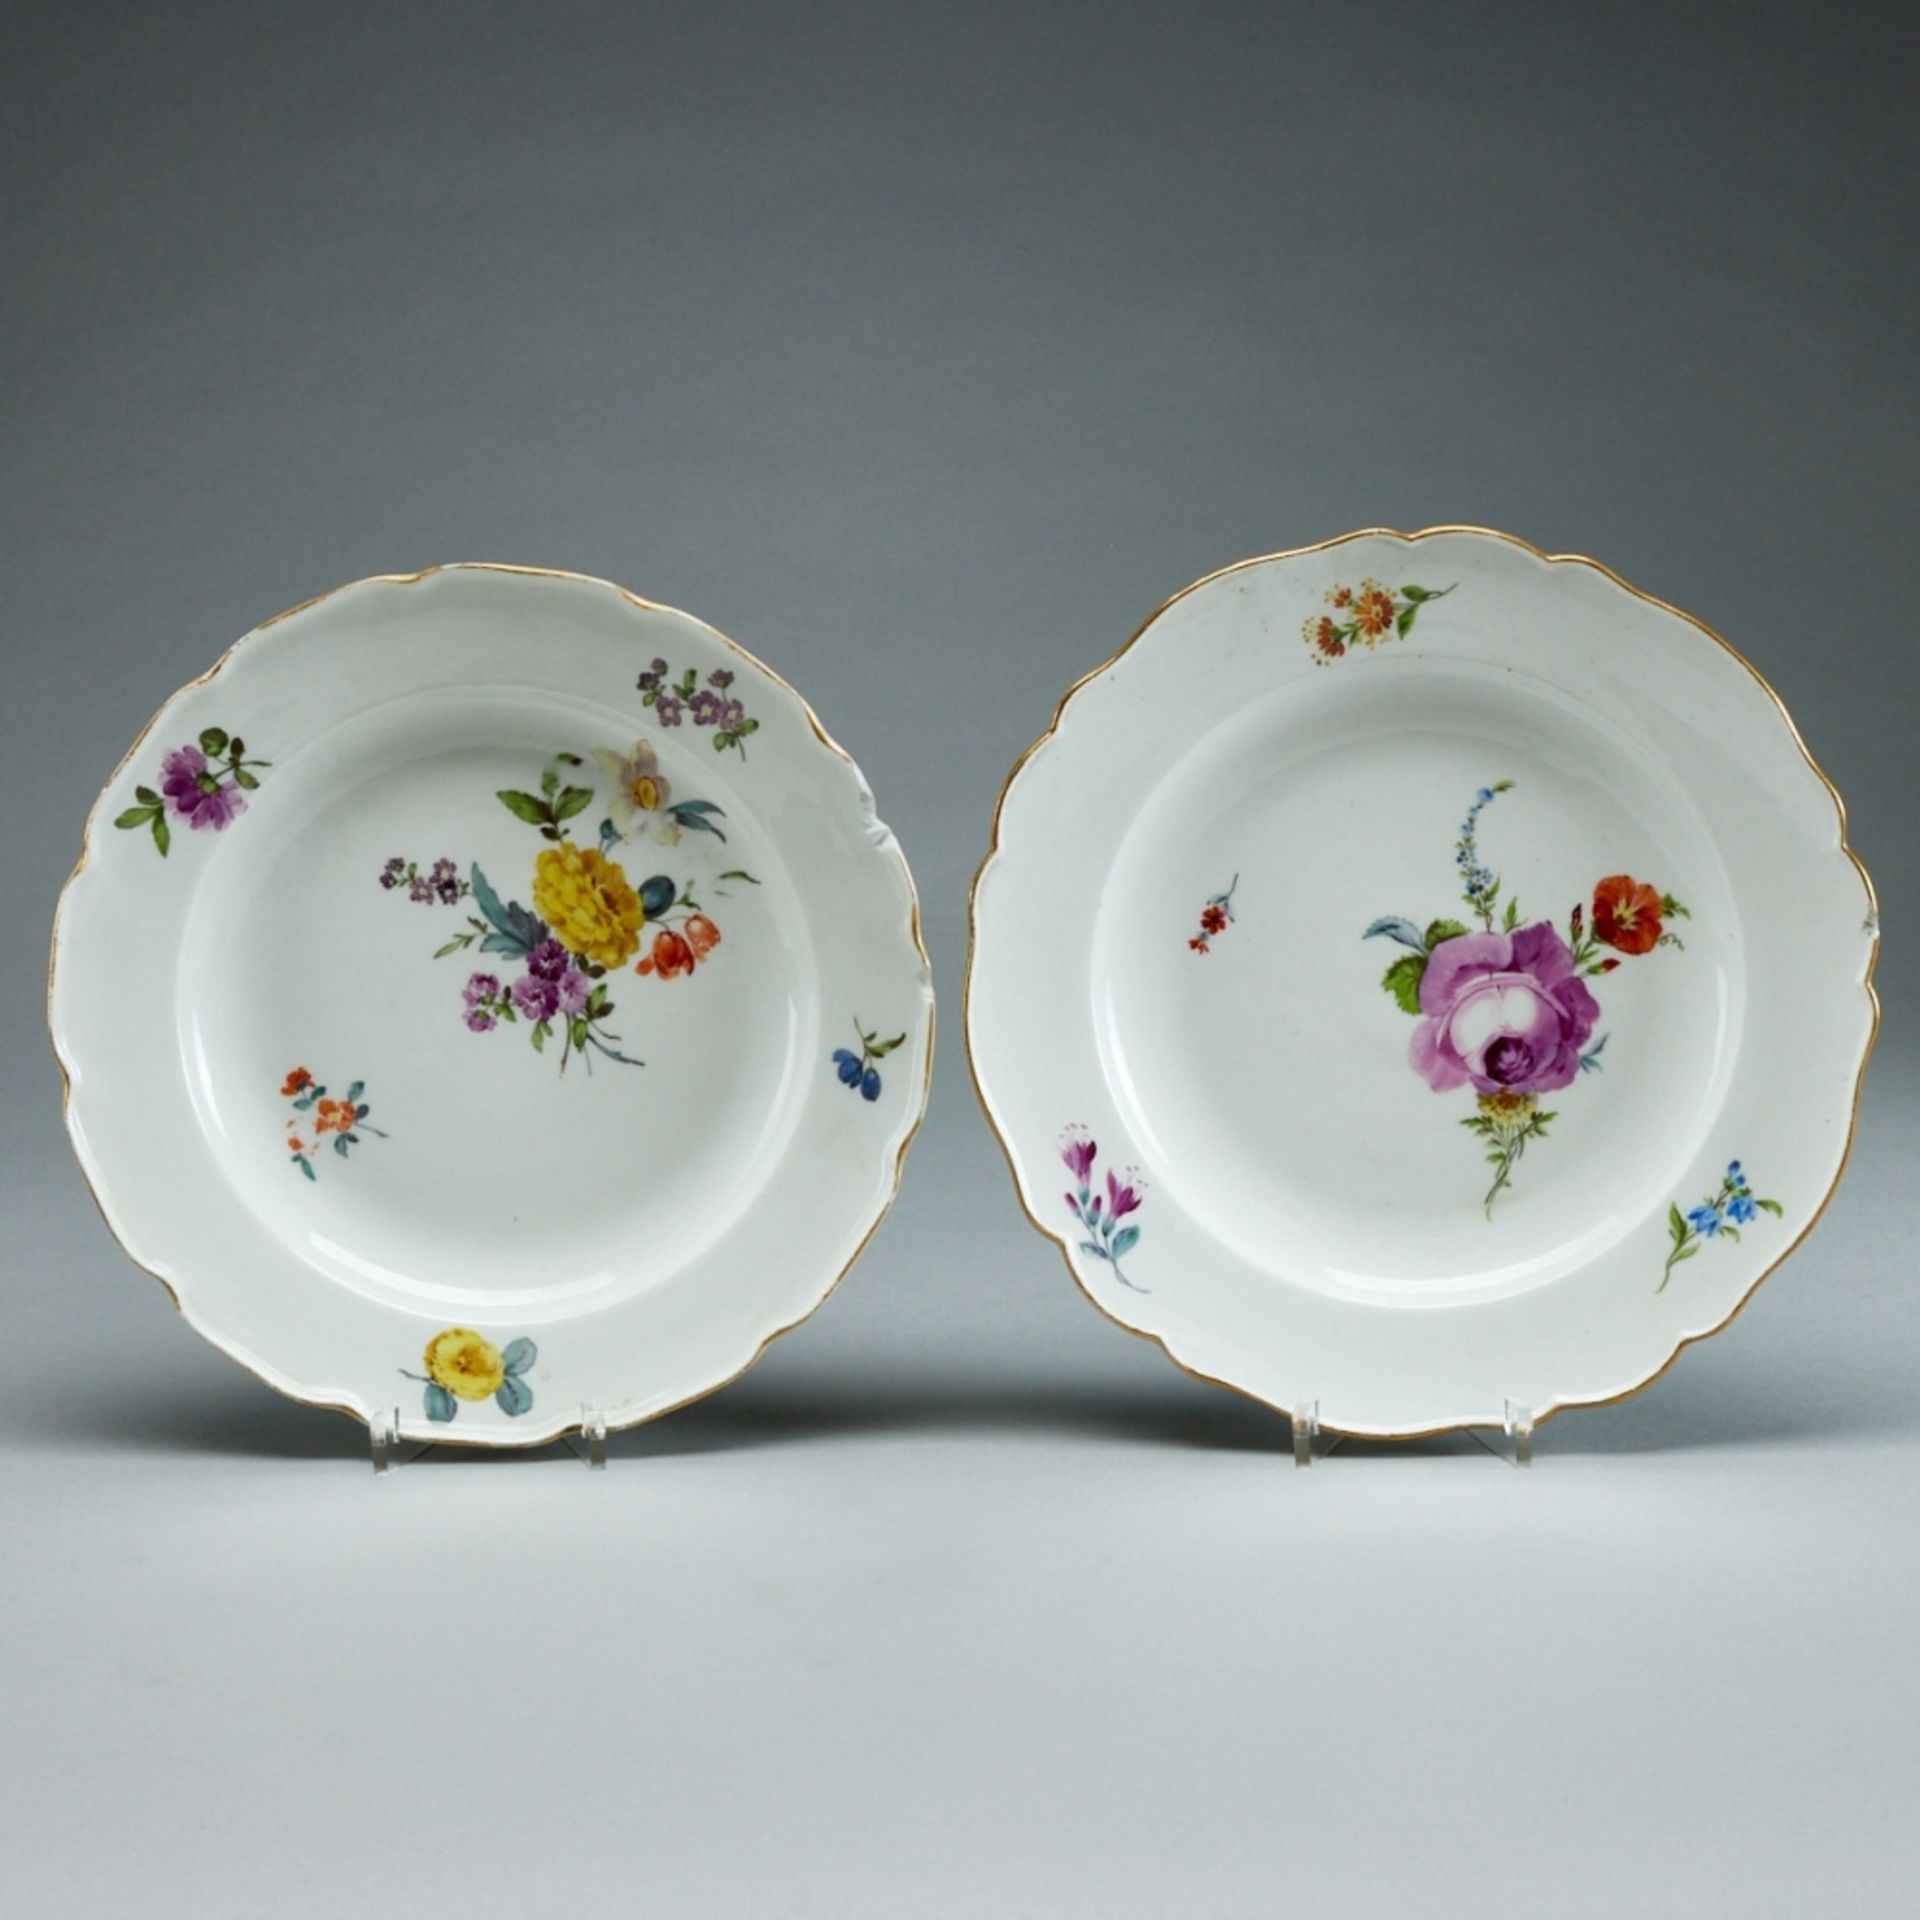 2 Speiseteller Blumenbukett und Blume 2. Meissen 1760 und 1774-1817.